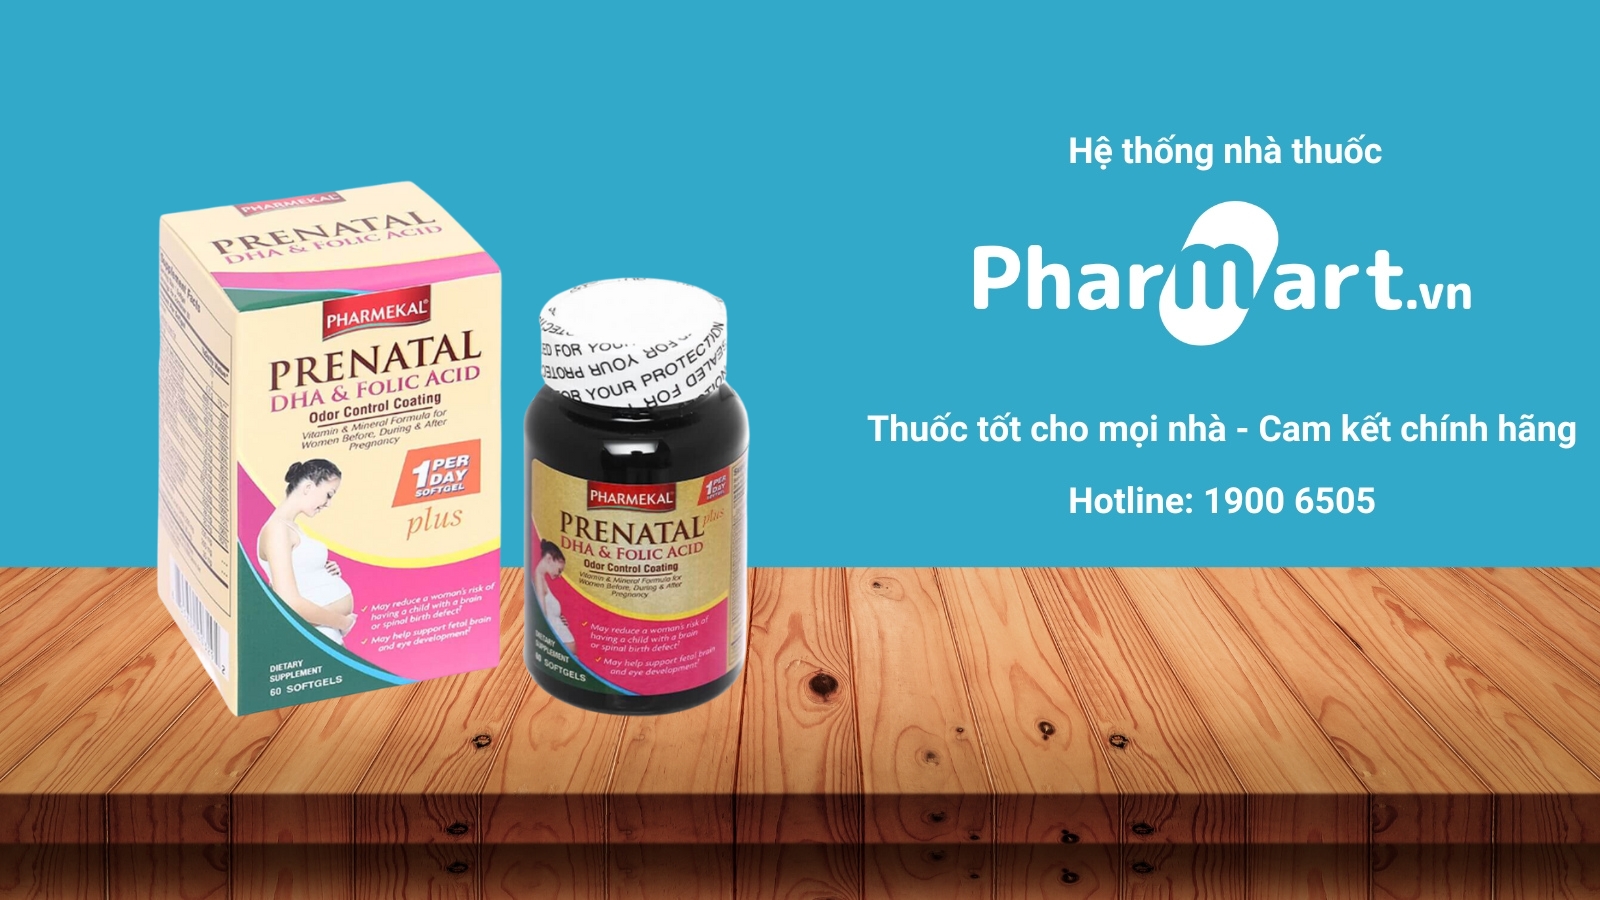 Mua Pharmekal Prenatal chính hãng tại Pharmart.vn